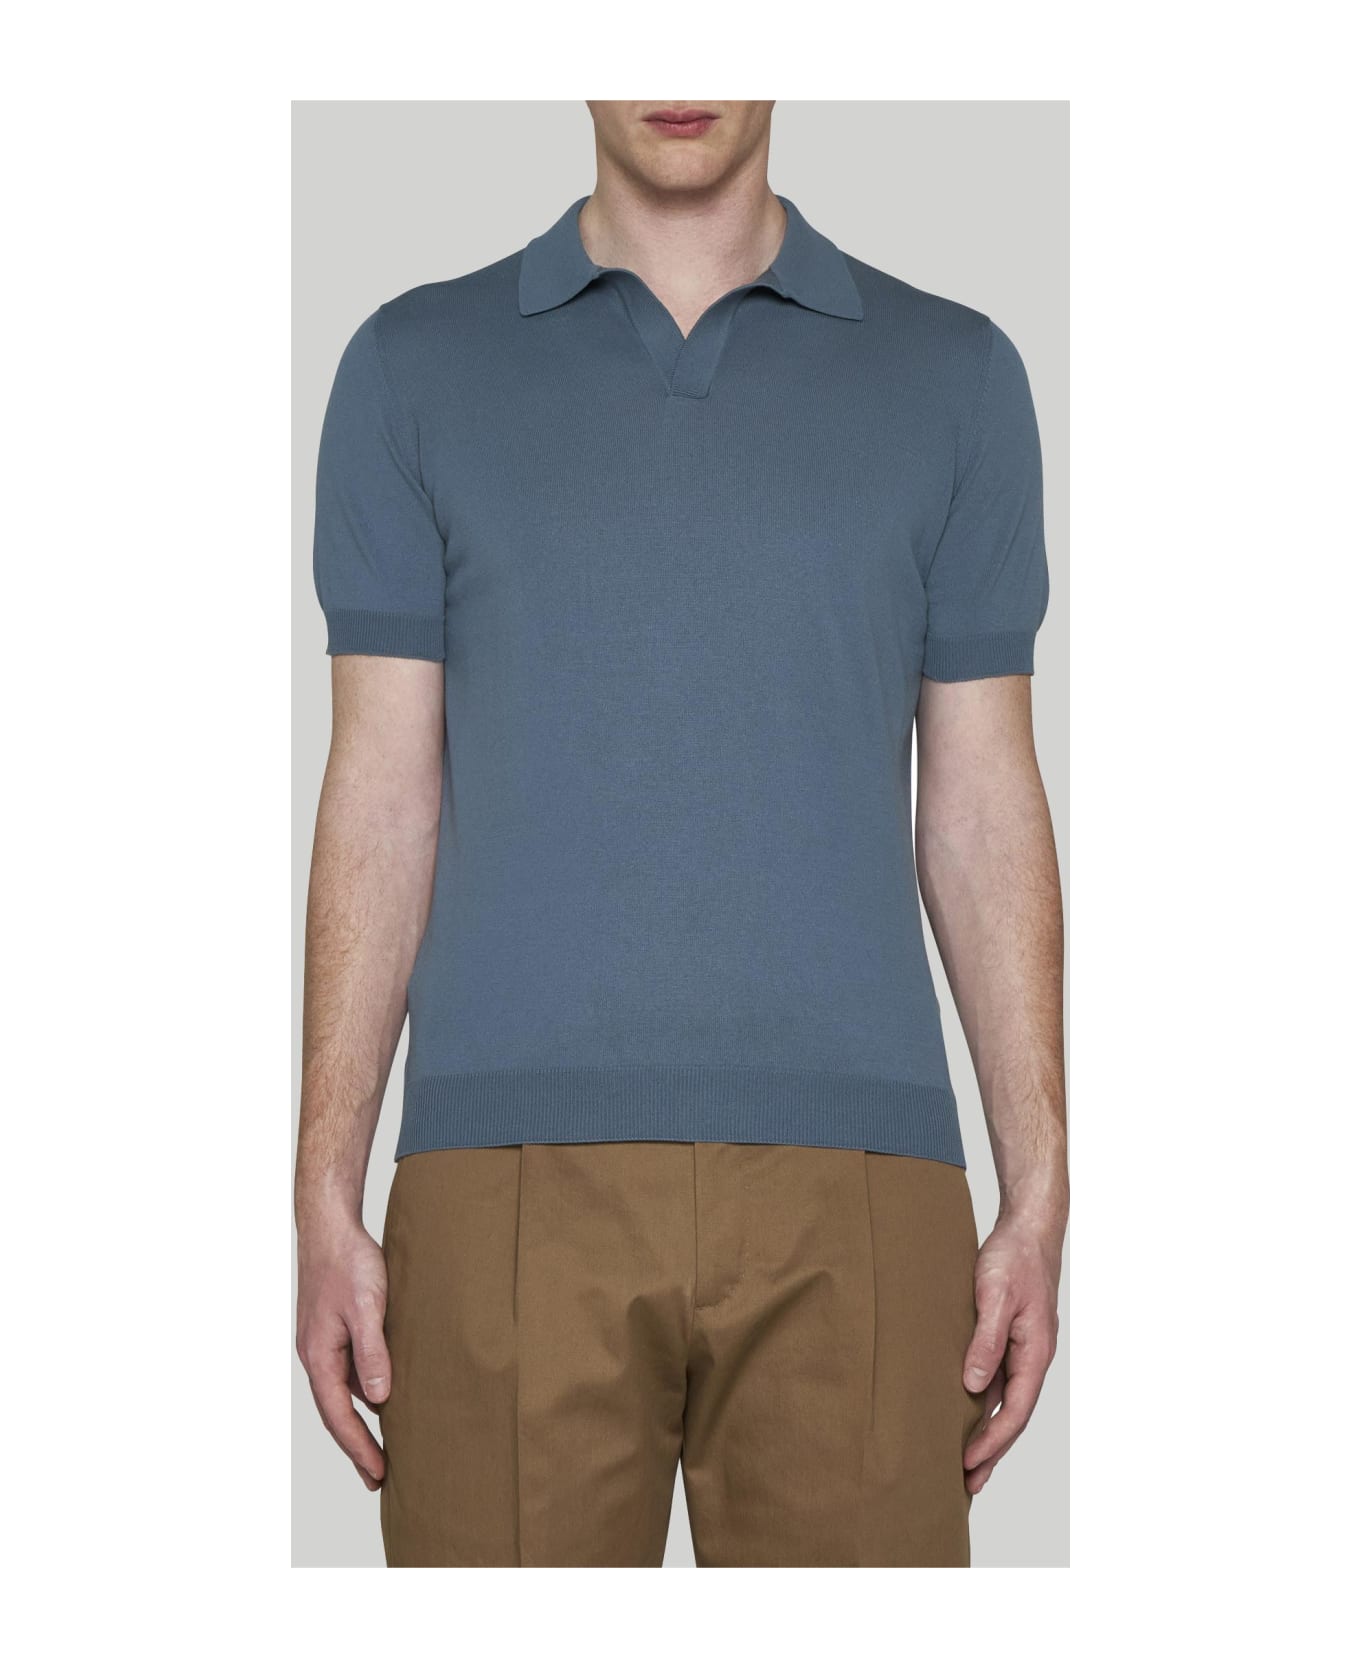 Tagliatore Cotton Polo Shirt - BROWN LEOPARD GREY